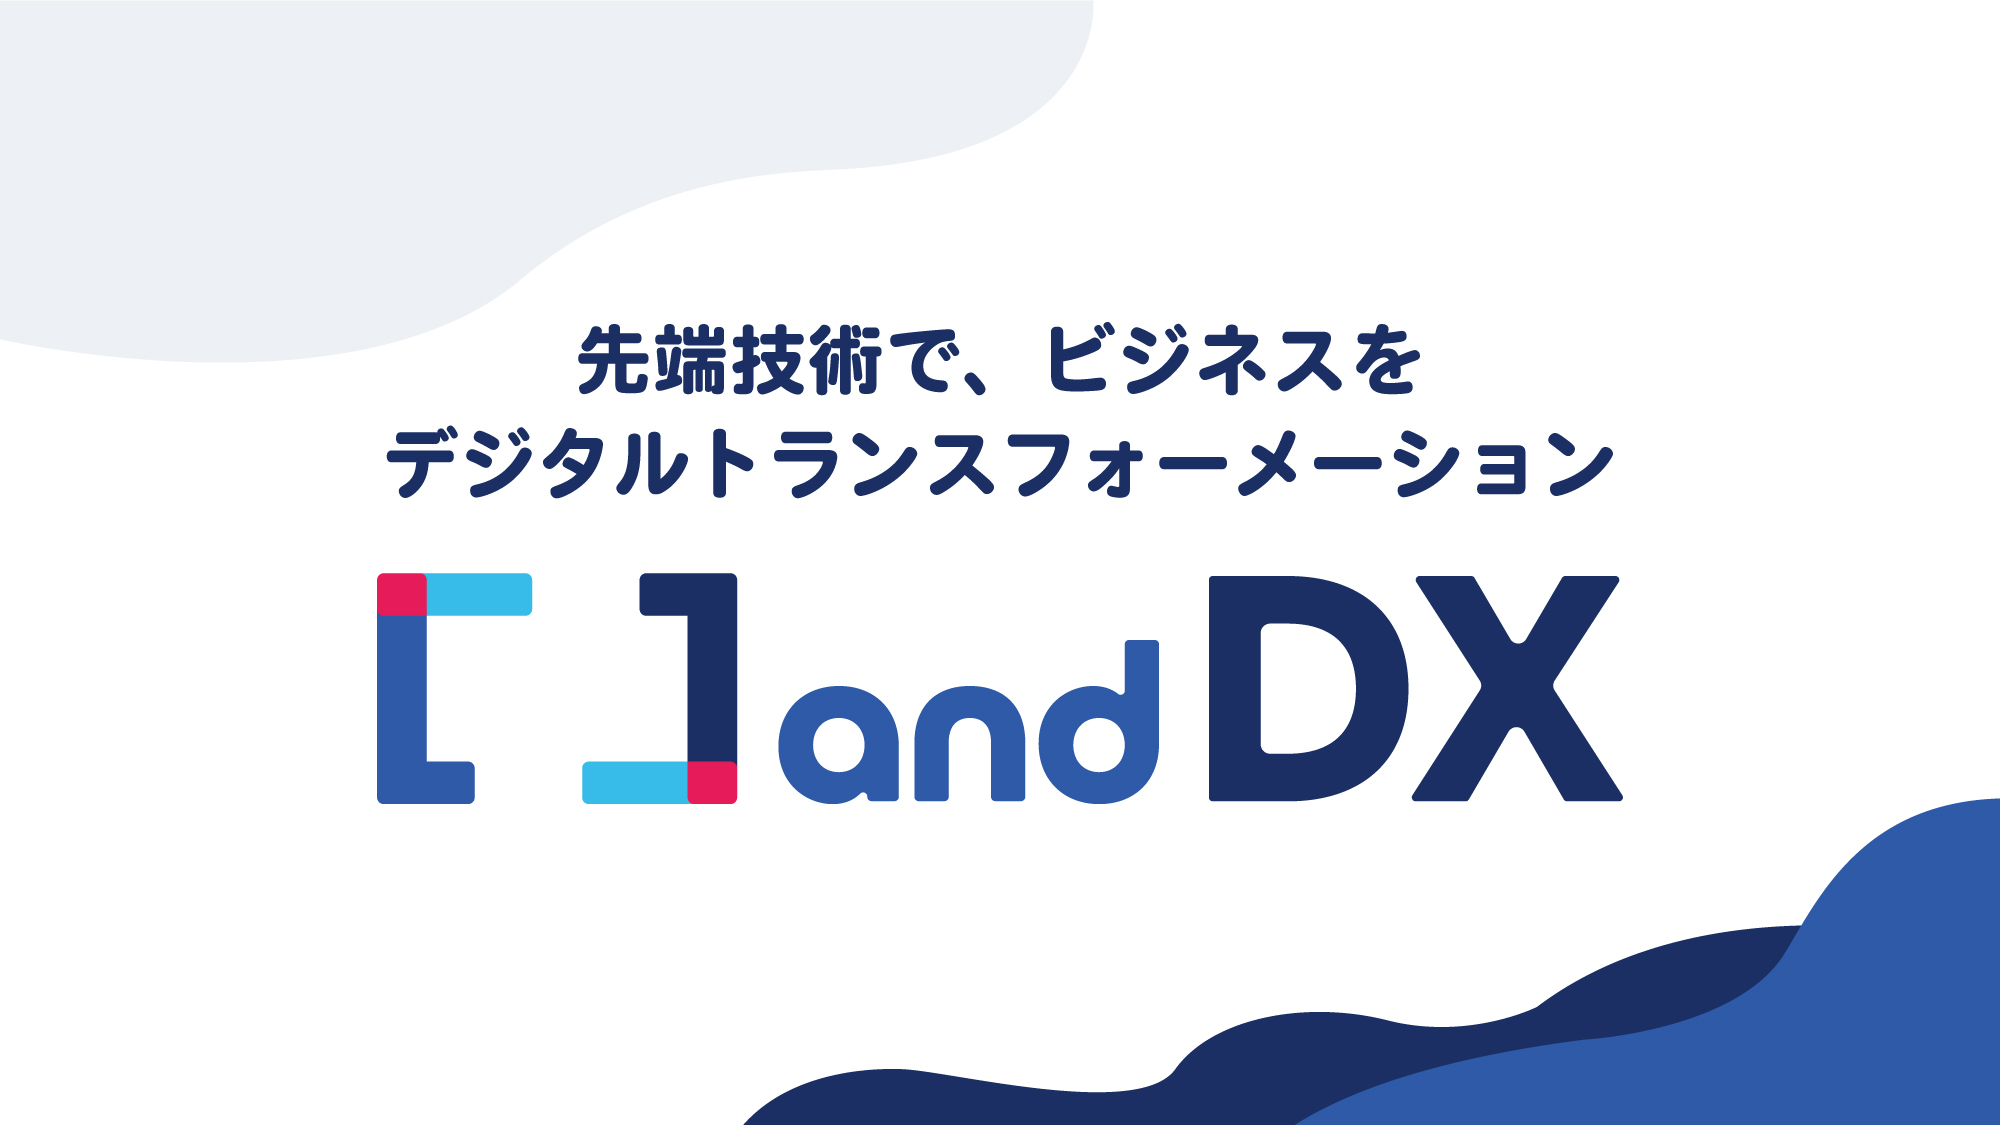 やさしいDXをコンセプトとしたデジタルトランスフォーメーション推進・実装のための新事業「and DX」をリリース